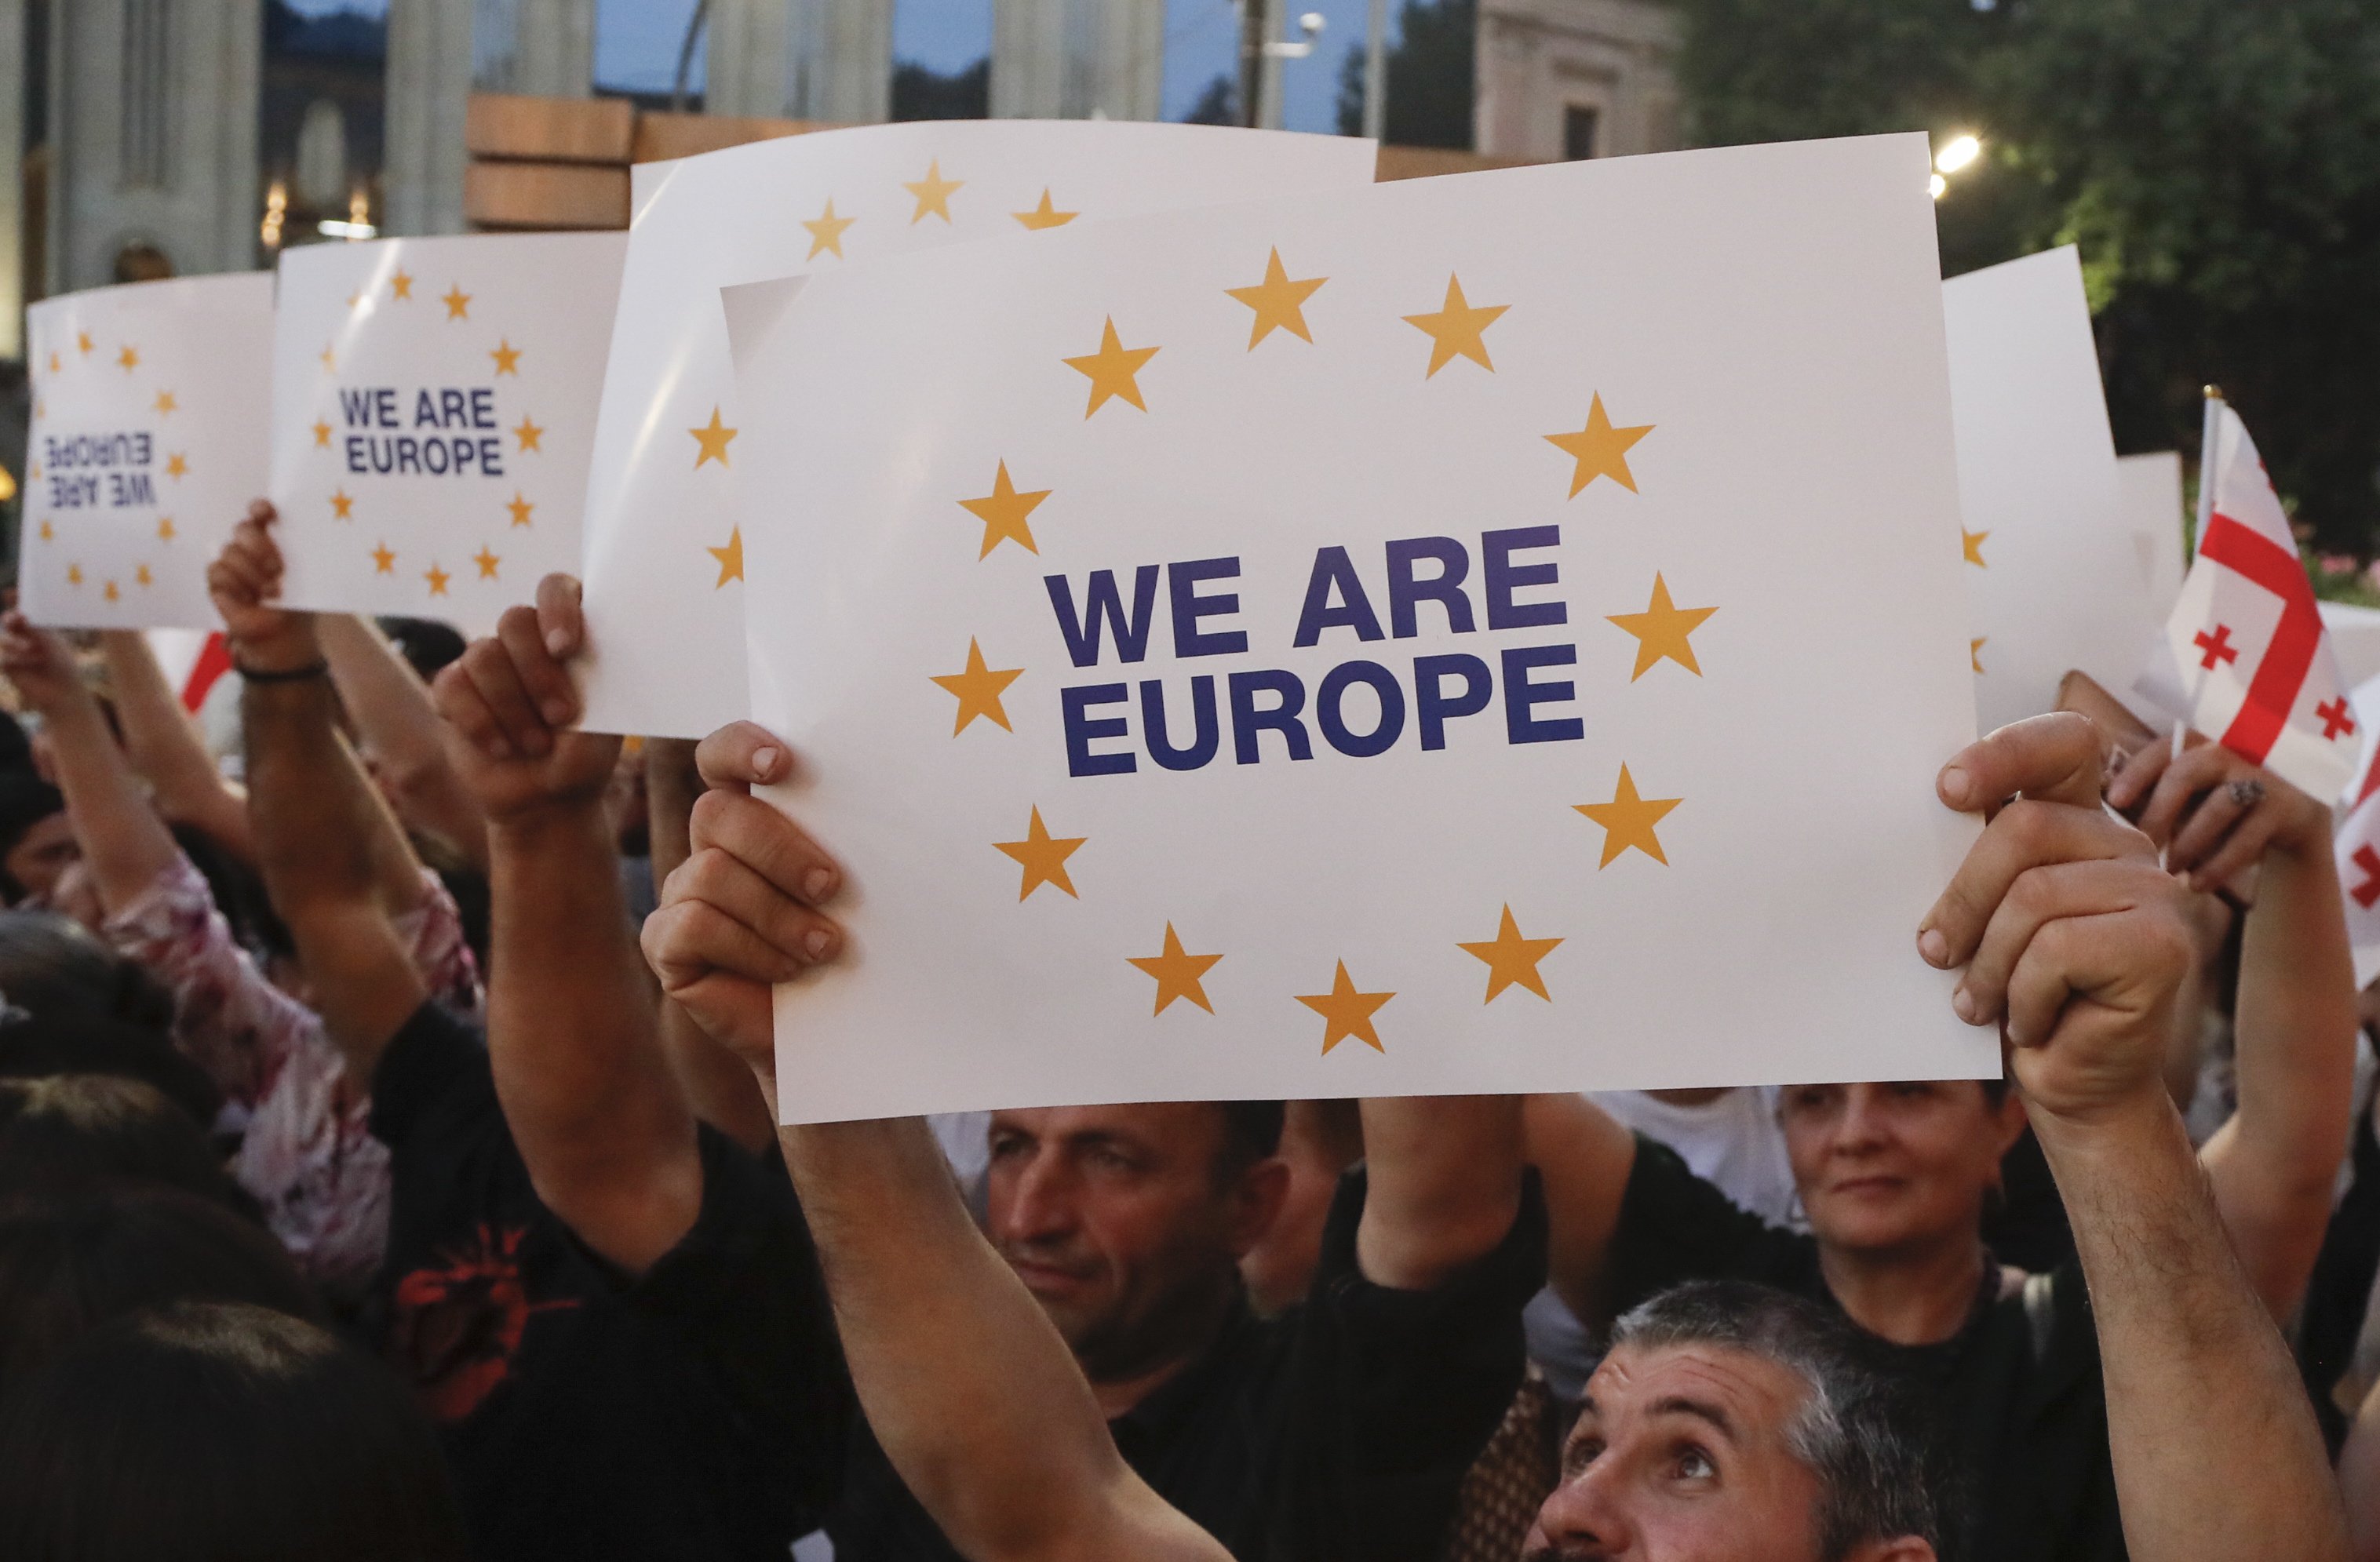 Geòrgia surt al carrer, després de la galleda d'aigua freda de la UE, i reclama: "Som Europa"